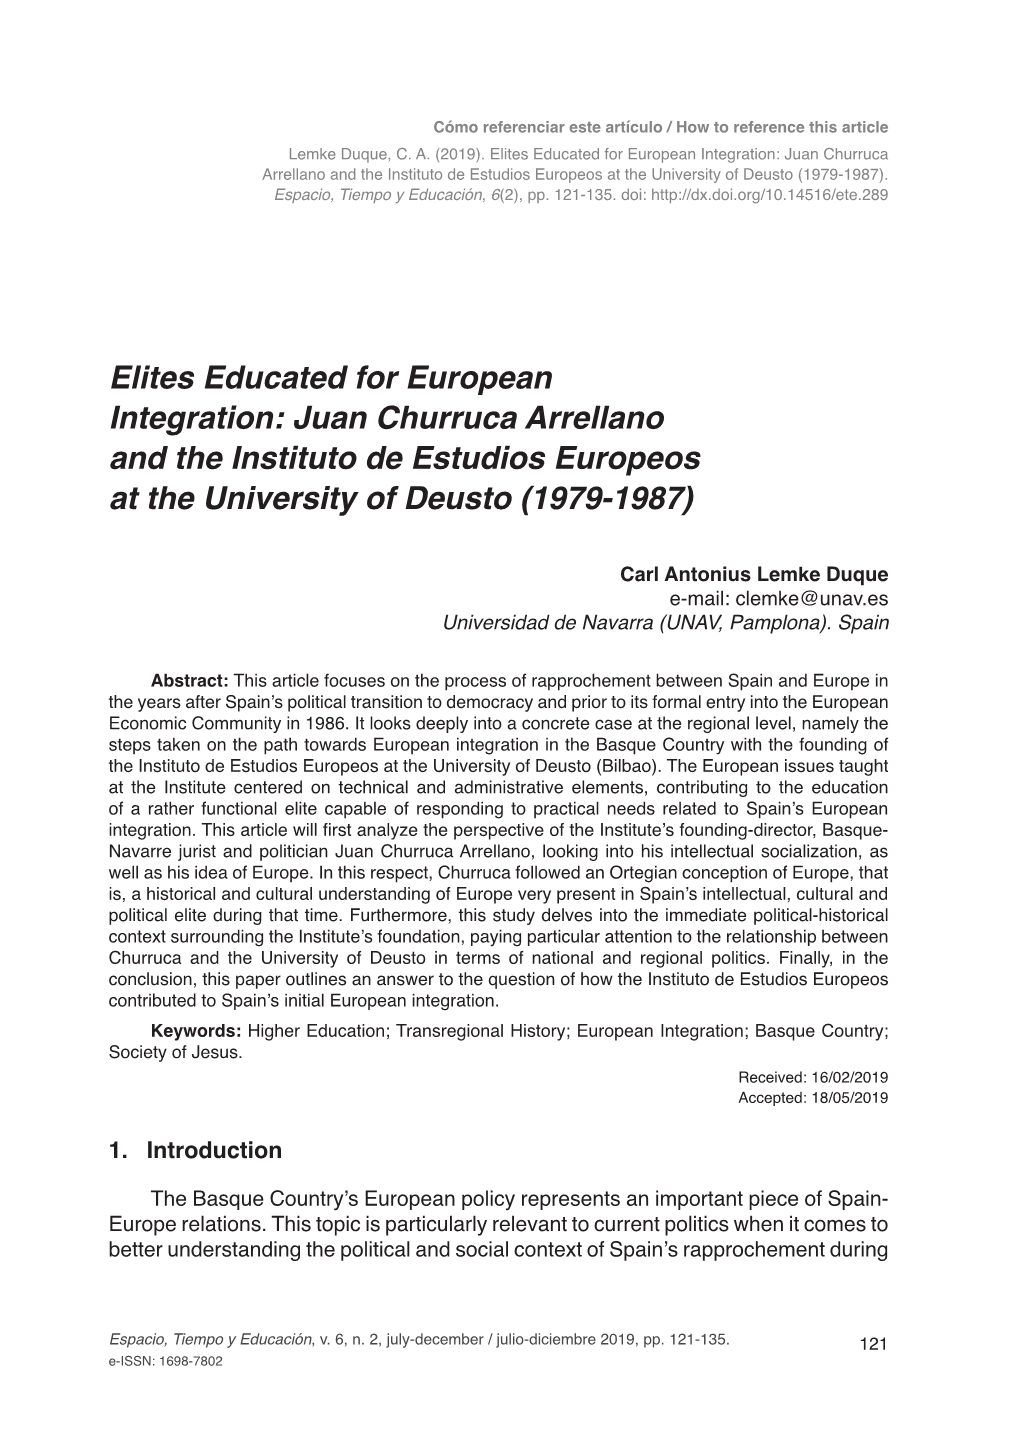 Elites Educated for European Integration: Juan Churruca Arrellano and the Instituto De Estudios Europeos at the University of Deusto (1979-1987)